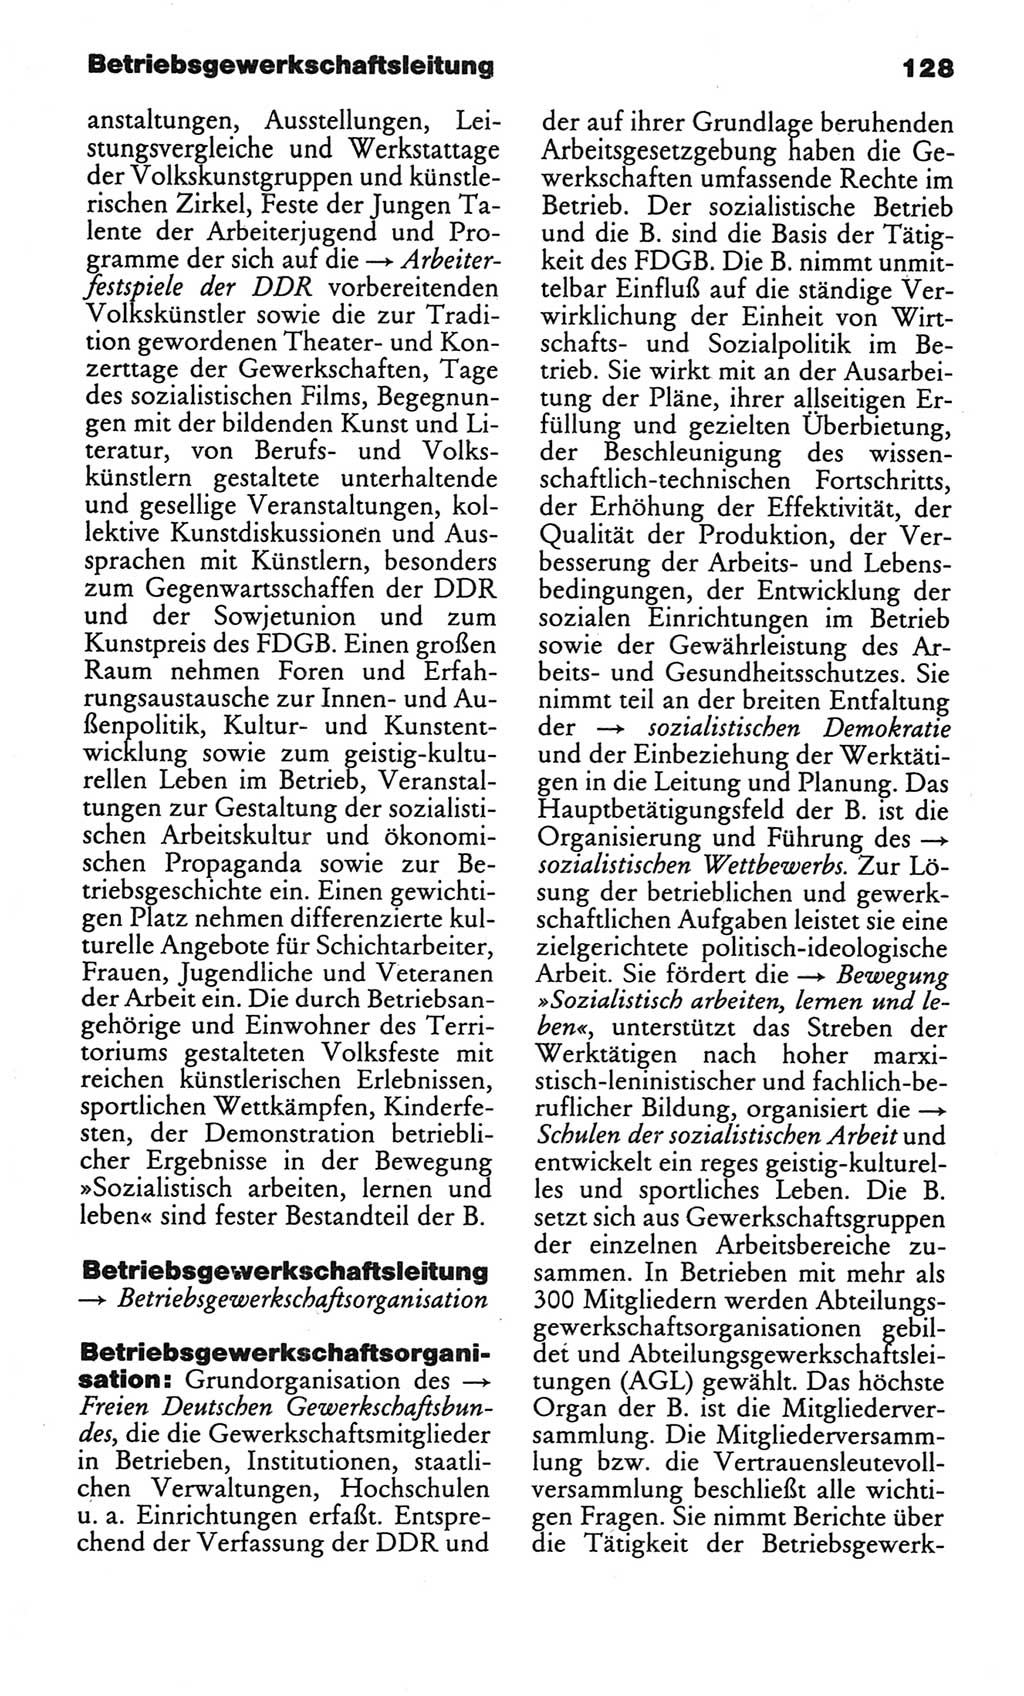 Kleines politisches Wörterbuch [Deutsche Demokratische Republik (DDR)] 1986, Seite 128 (Kl. pol. Wb. DDR 1986, S. 128)